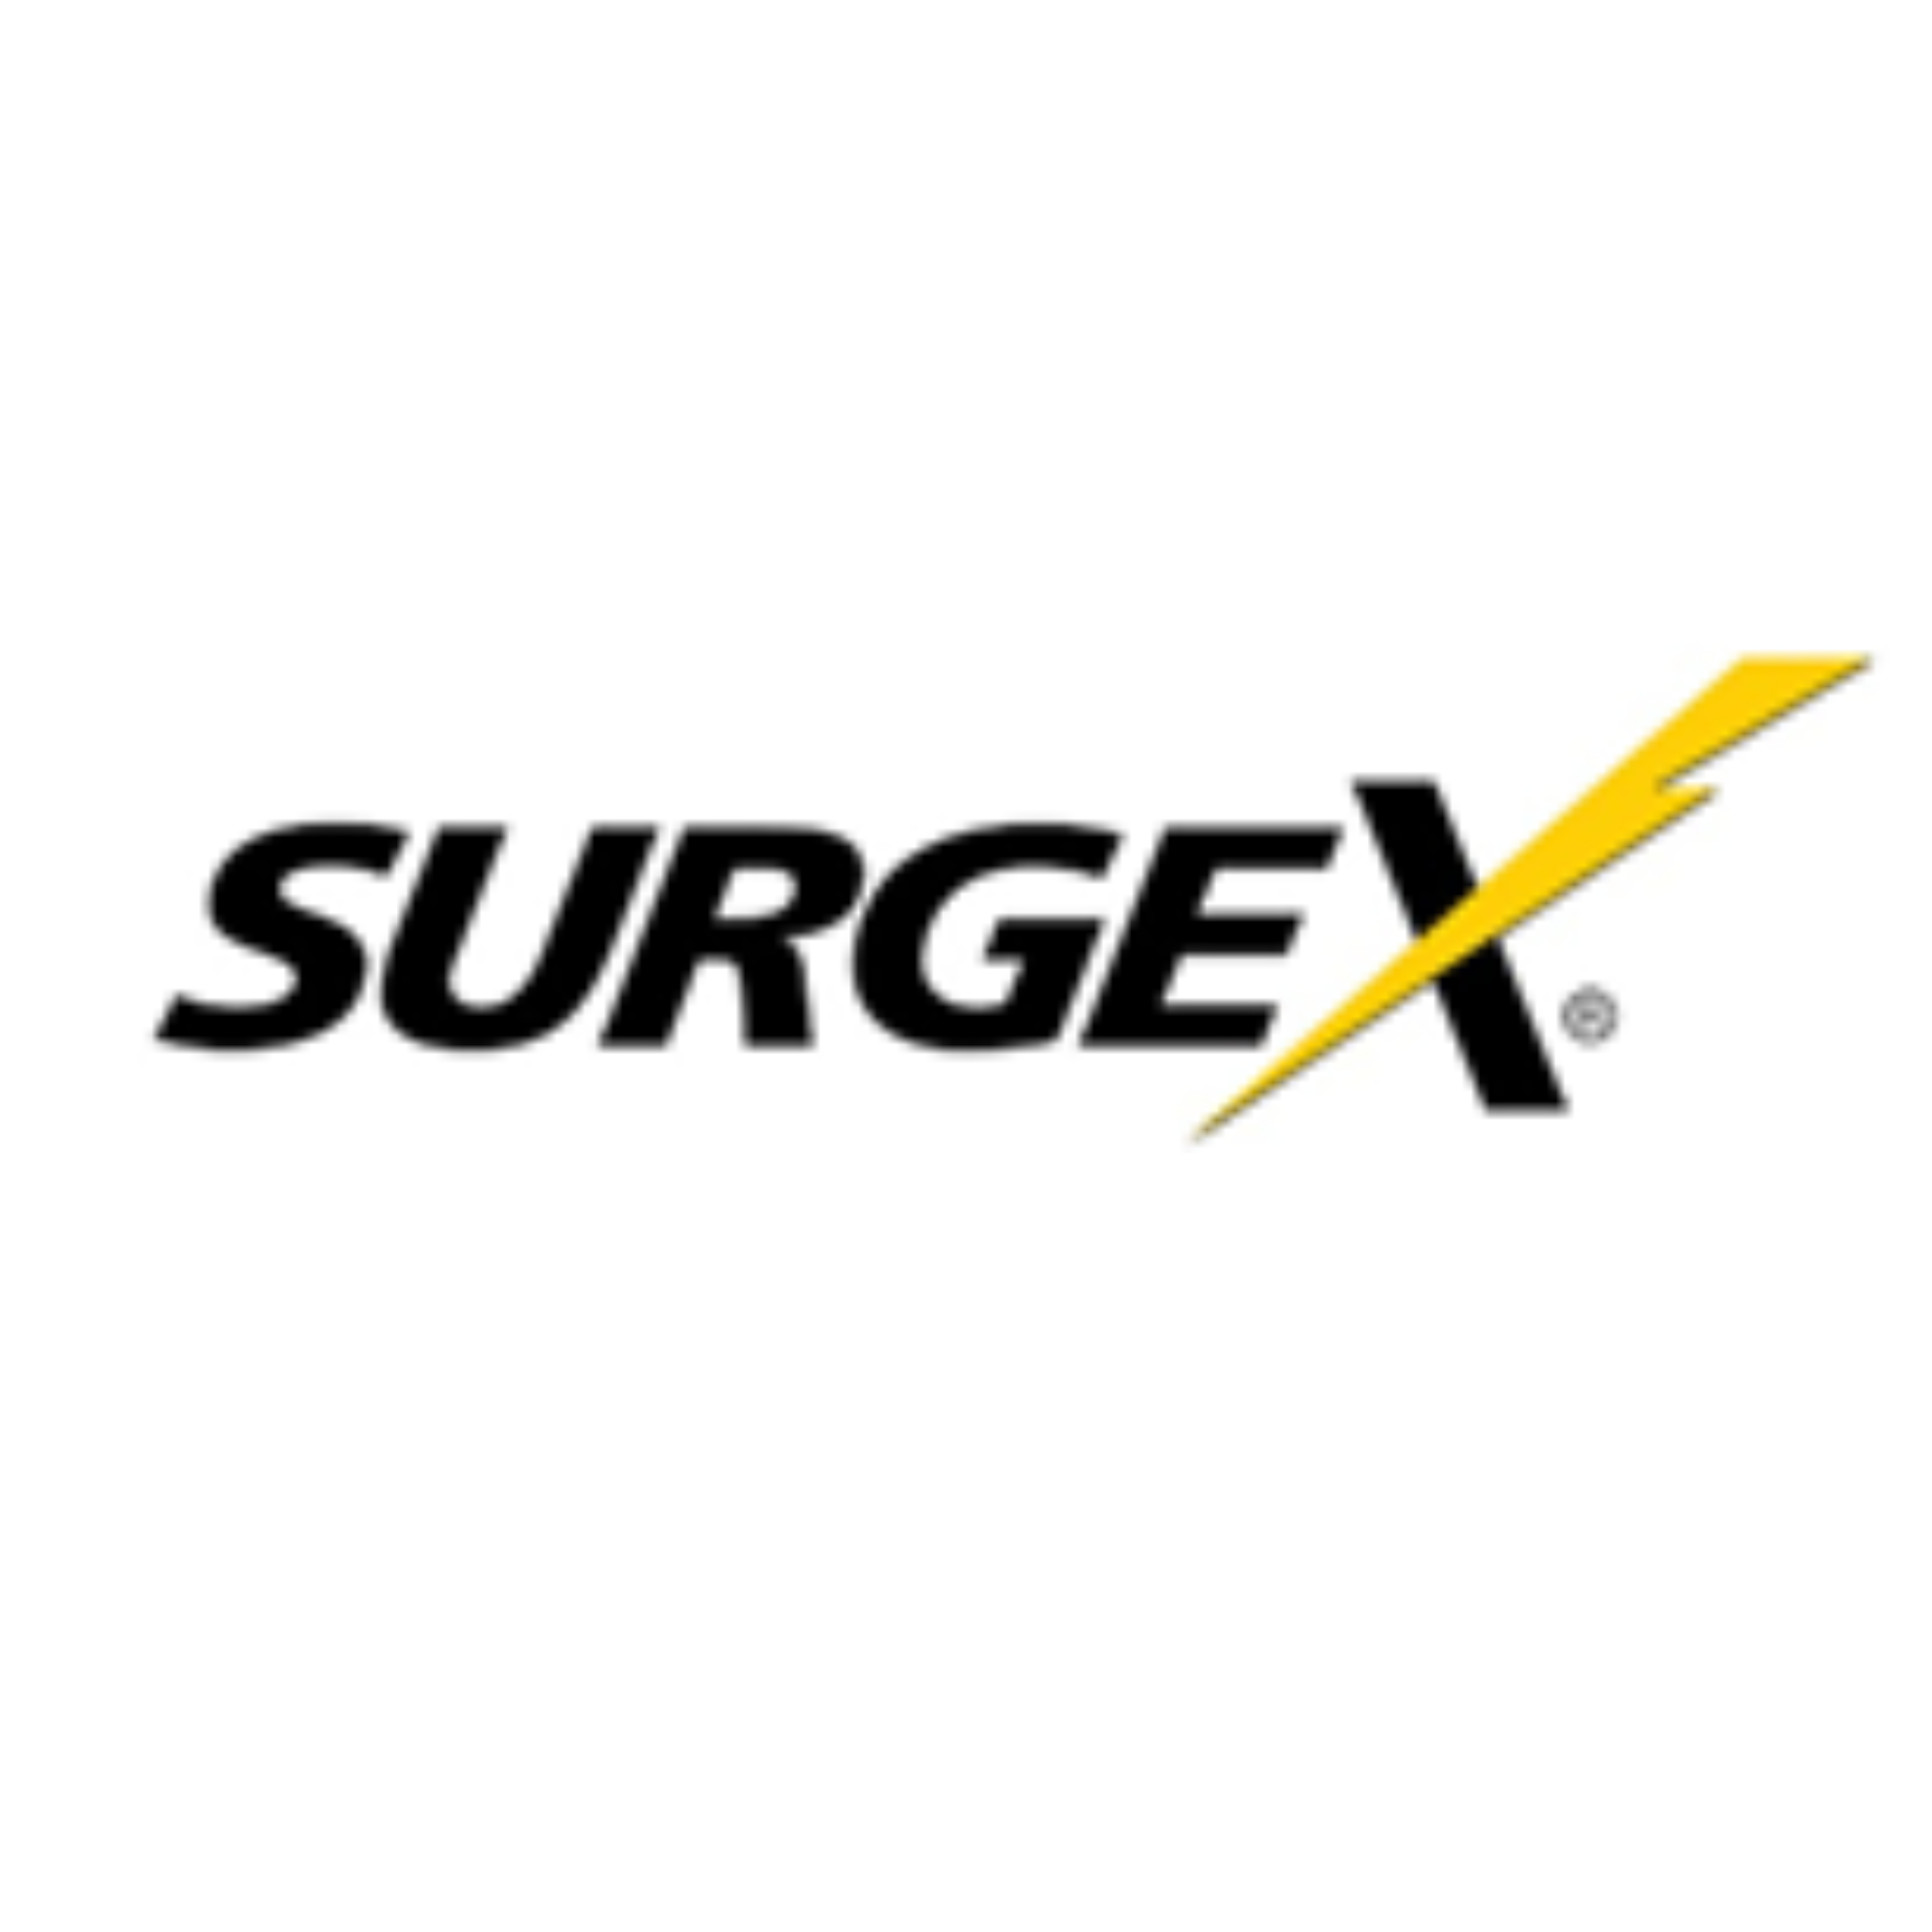 Surgex